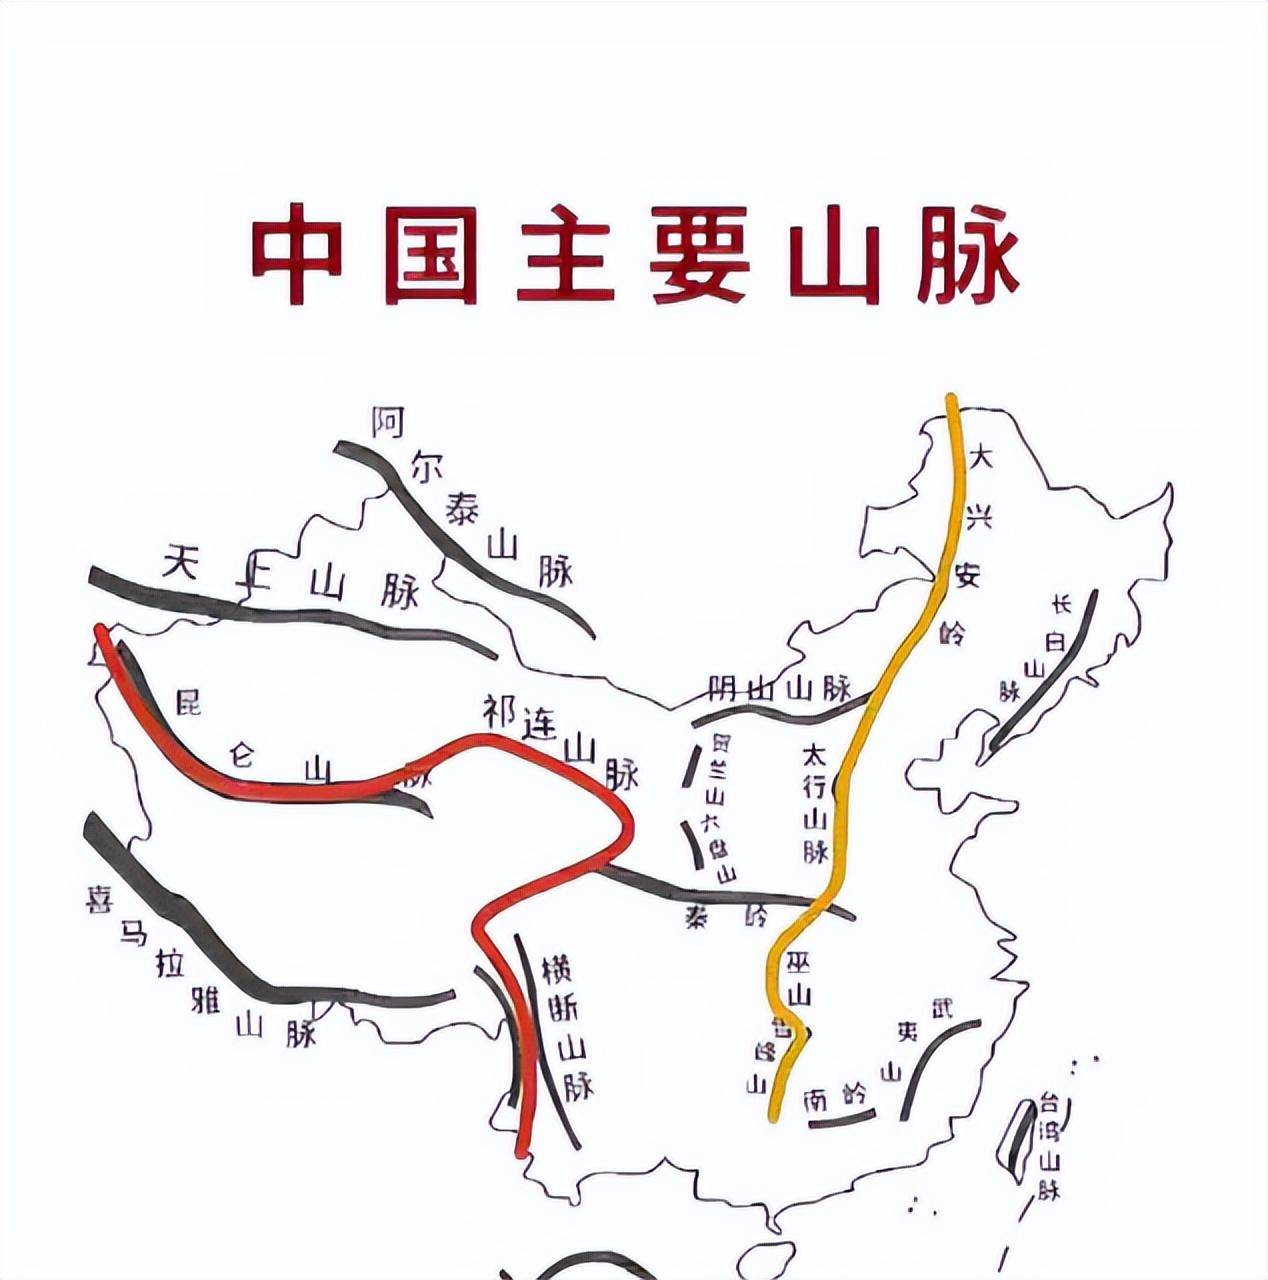 叶舒宪介绍,王屋山和太行山均是南北走向,把北,中两条龙干连接起来